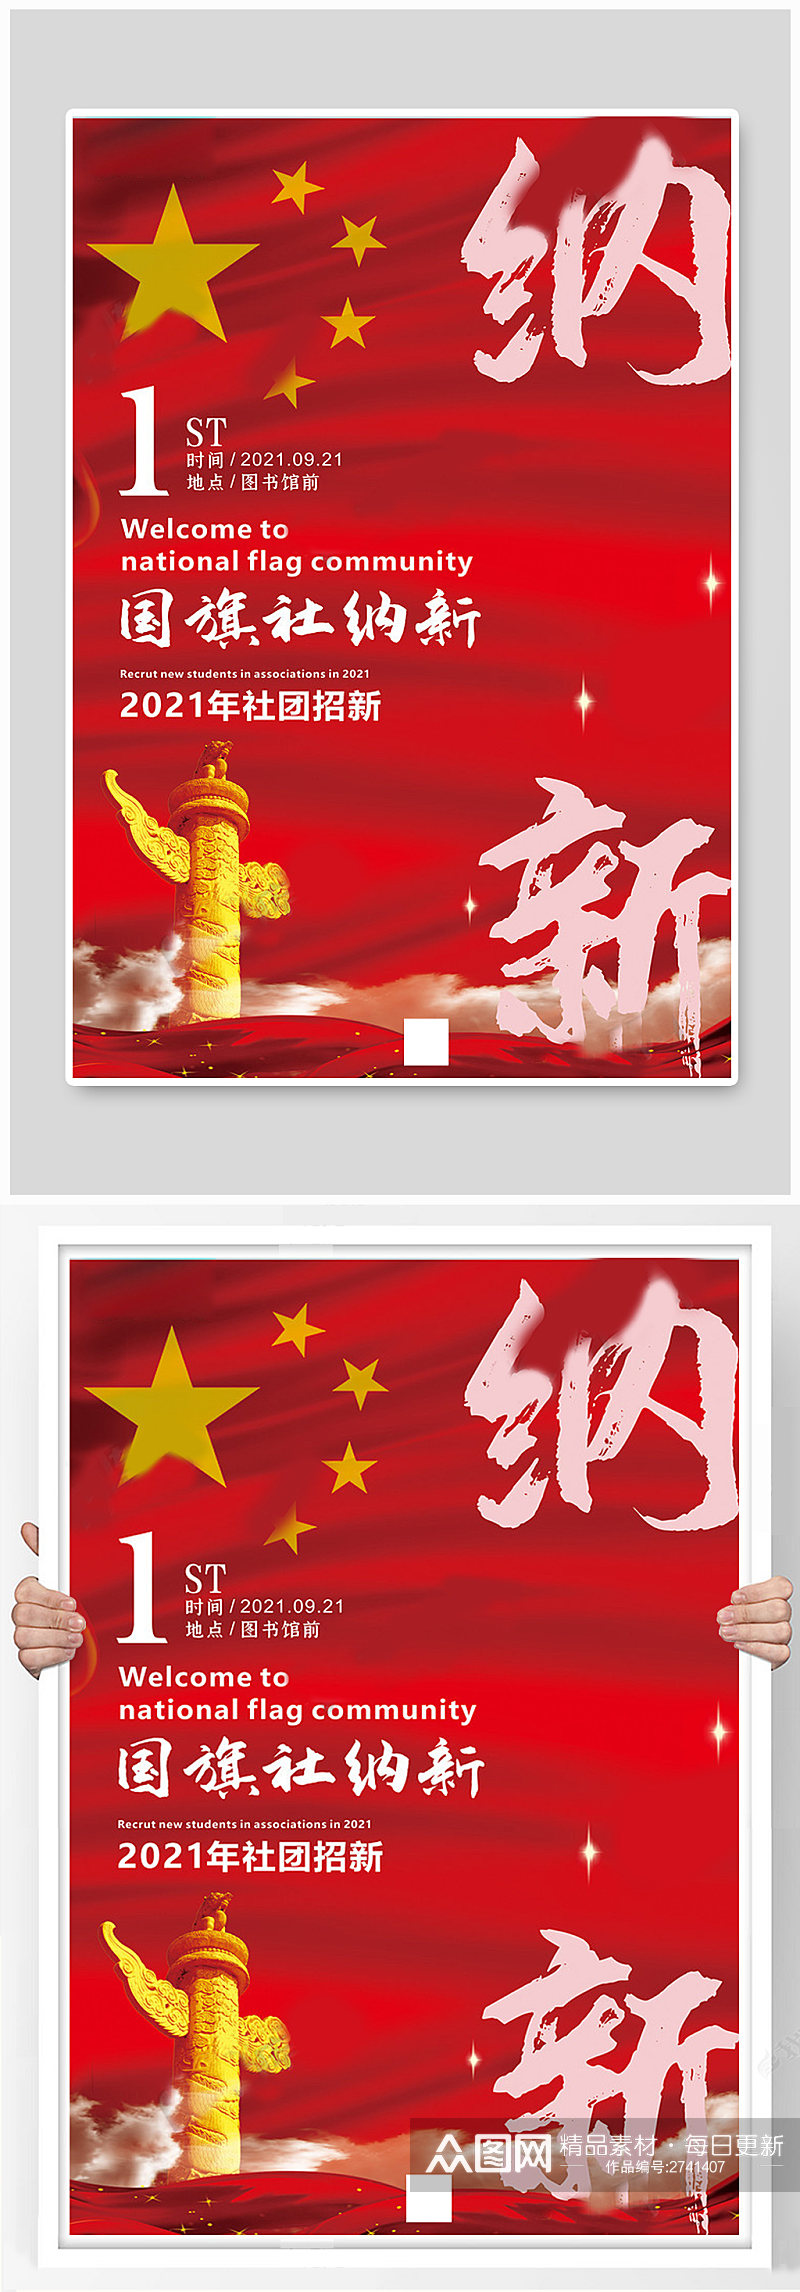 社团纳新国旗红色中国风海报素材